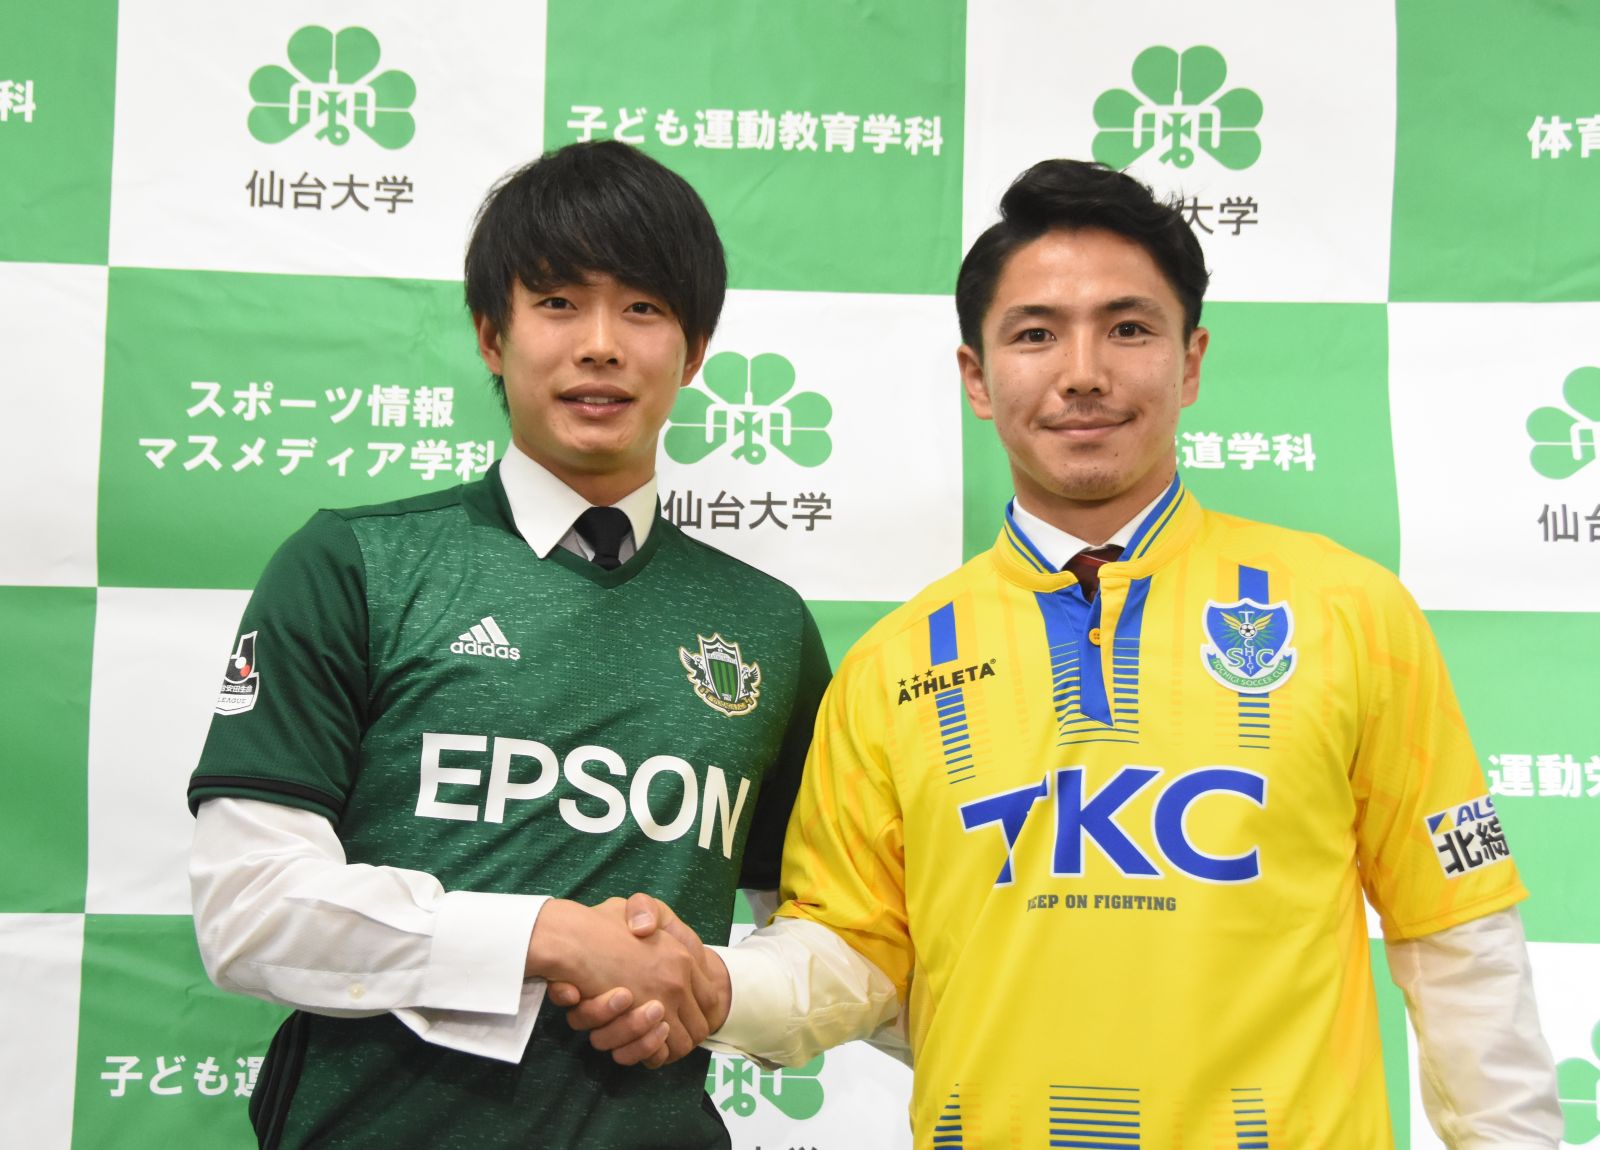 男子サッカー部の2名がプロチームへ入団 合同記者会見を開催 仙台大学